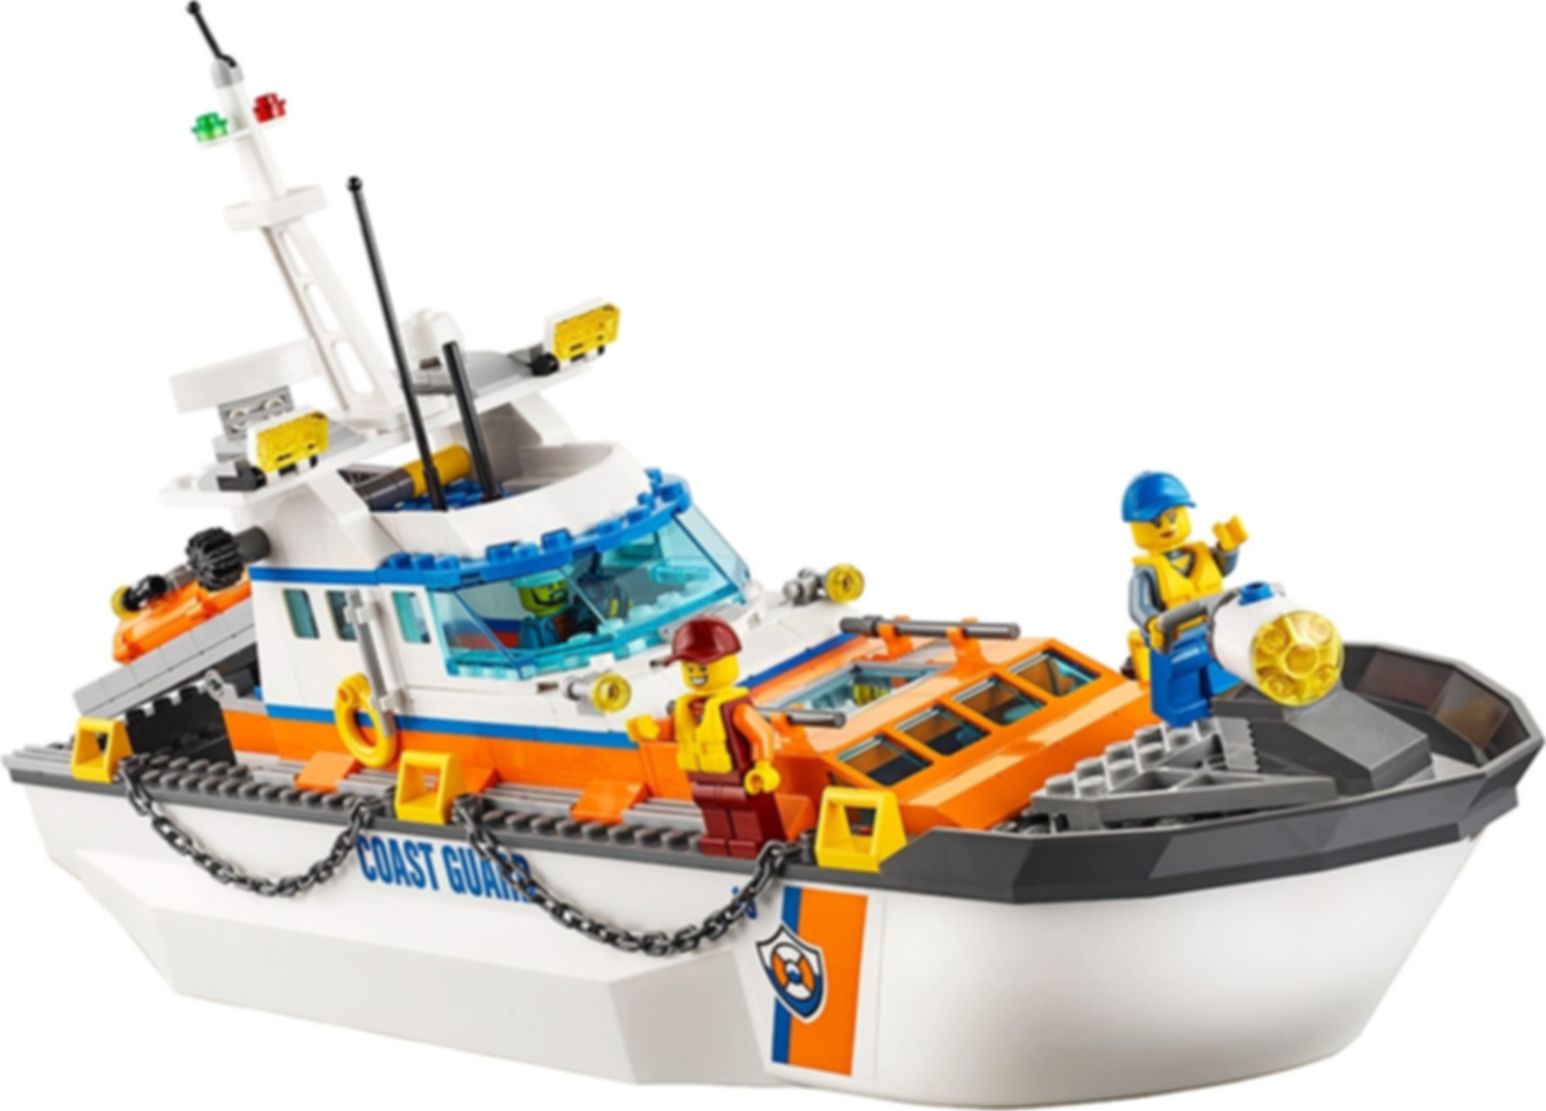 LEGO® City Quartier generale della Guardia Costiera componenti